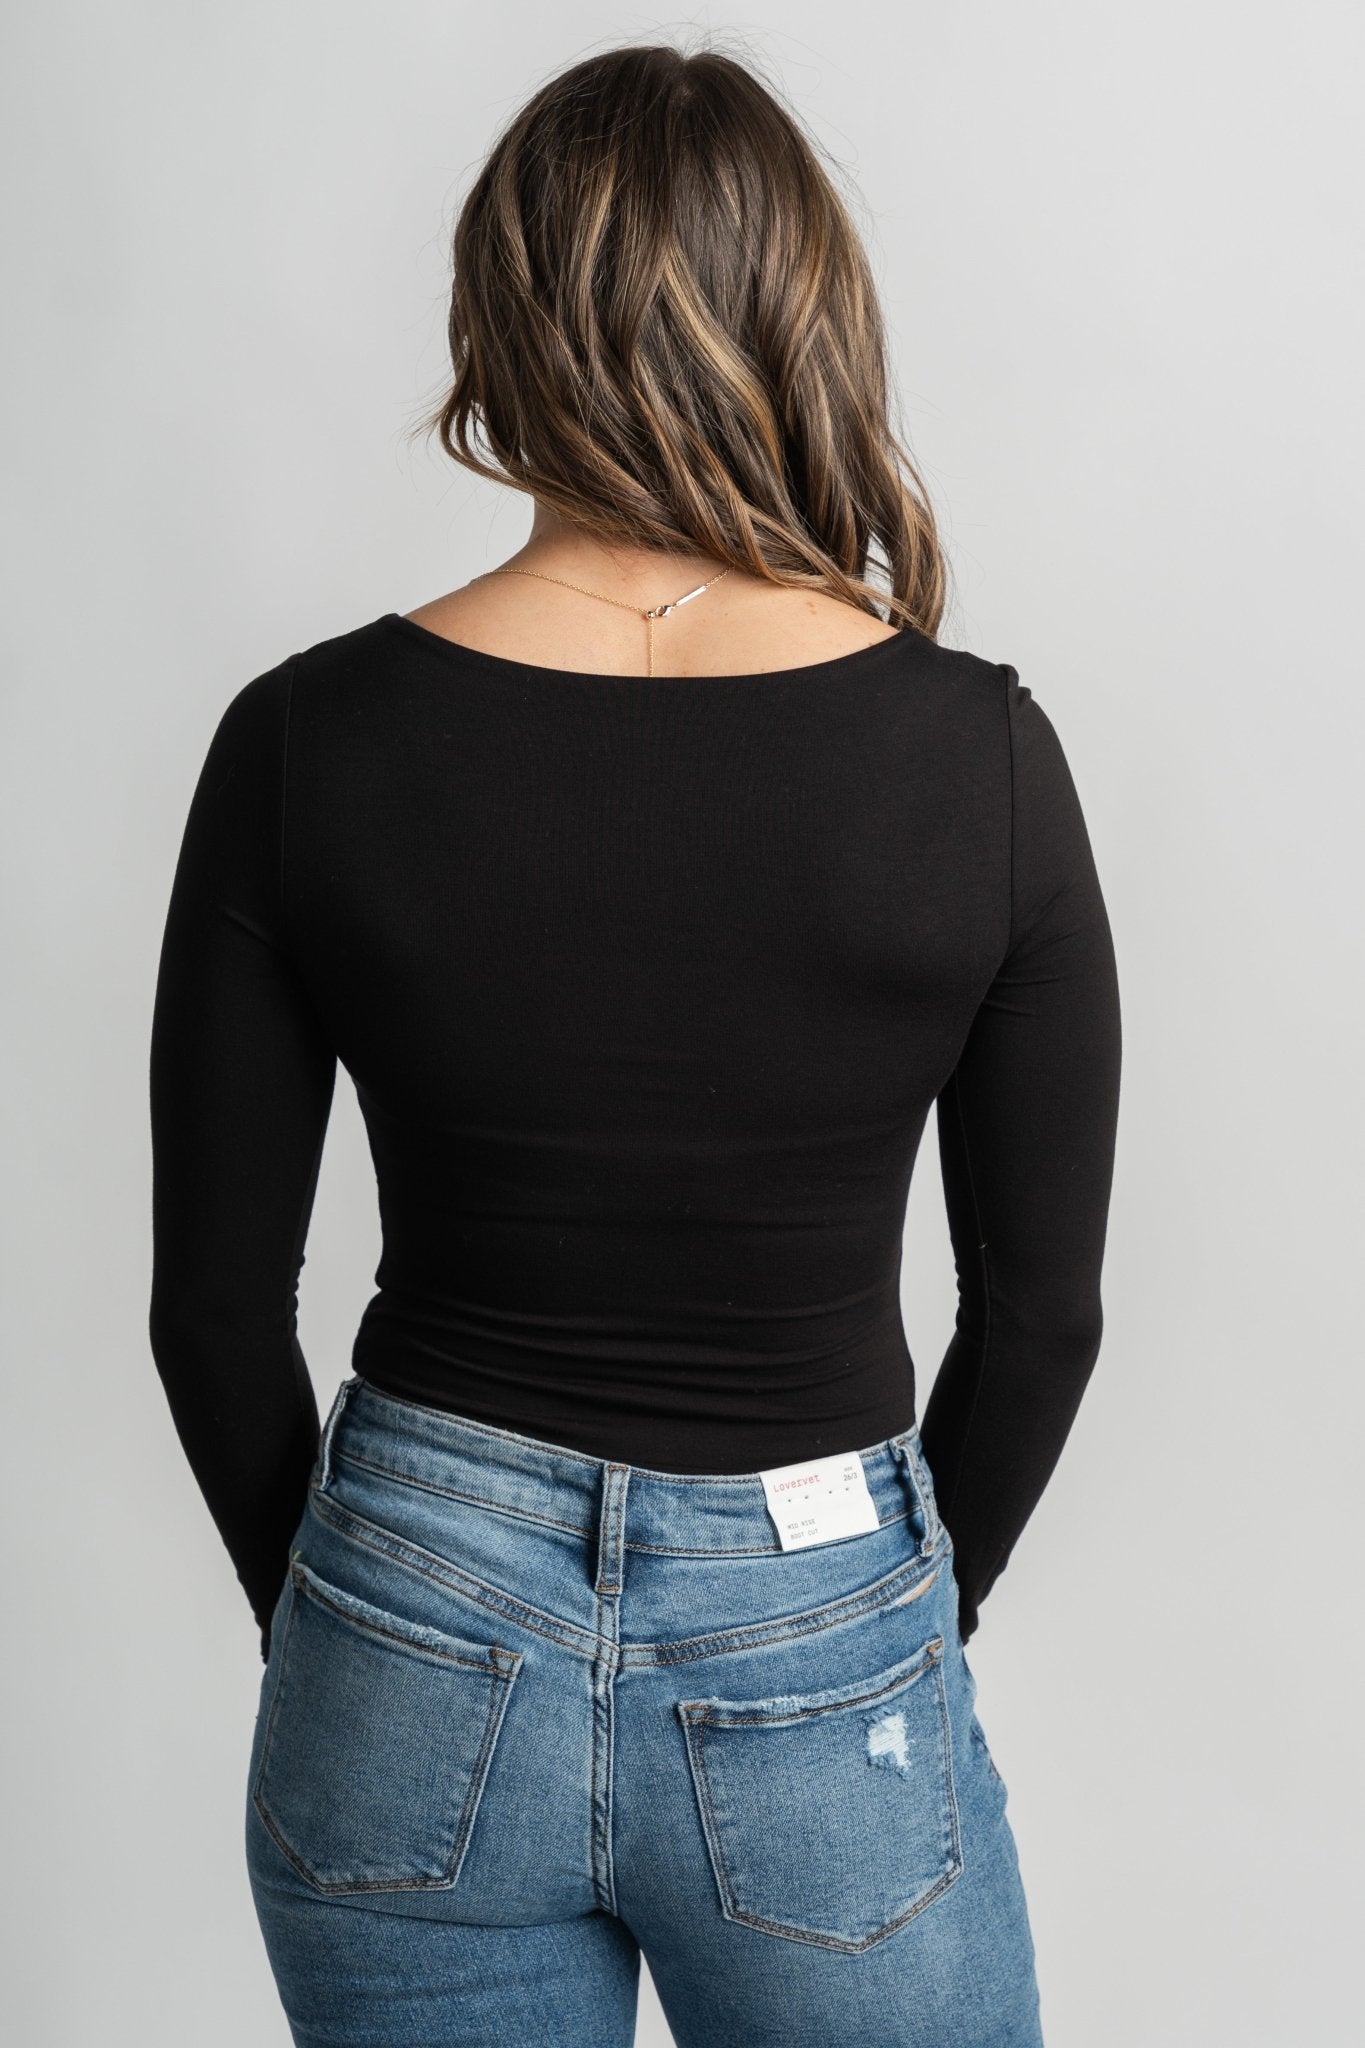 Long sleeve round neck bodysuit black Stylish bodysuit - Womens Fashion Bodysuits at Lush Fashion Lounge Boutique in Oklahoma City